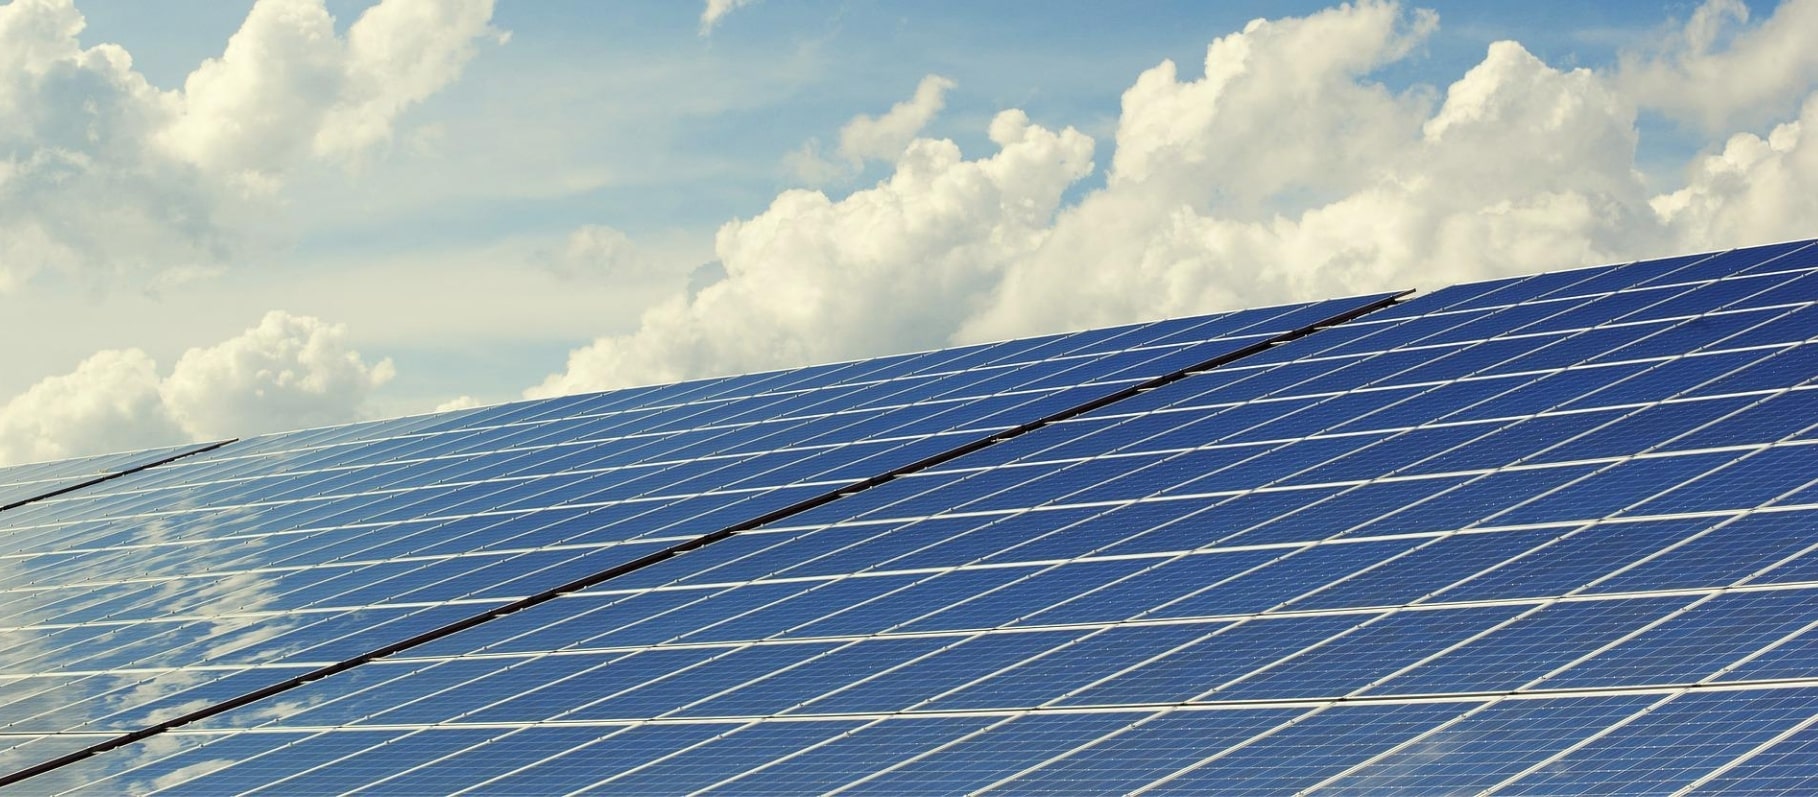 Solar Panel System Subsidy in Uttar Pradesh